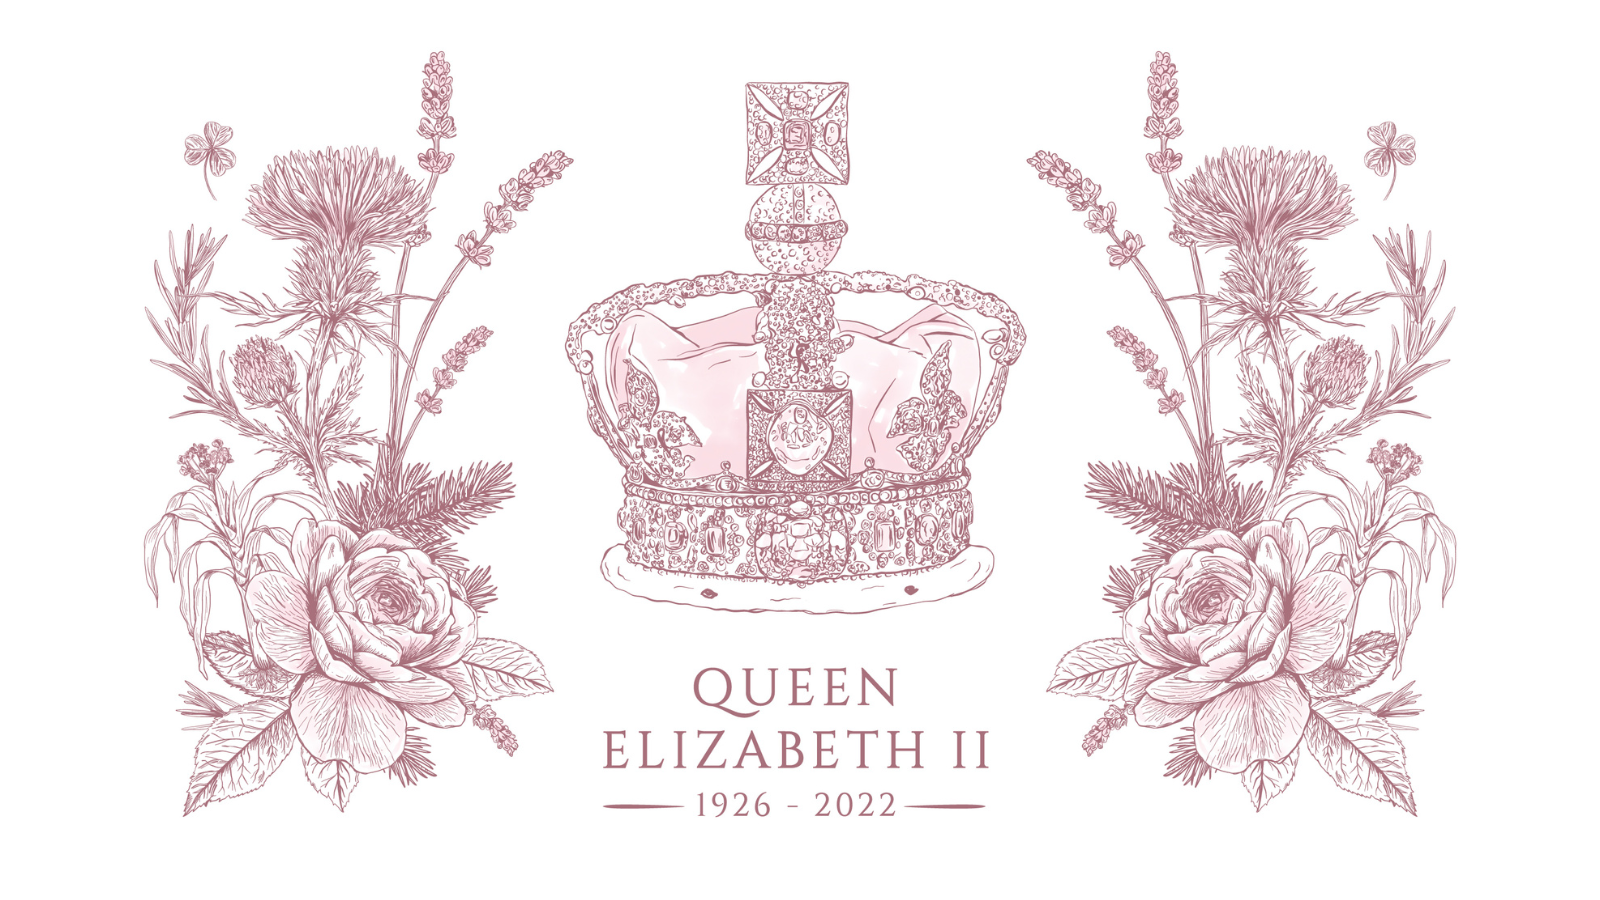 Queen Elizabeth II Commemorative Canvas Tote Bag by Victoria Eggs